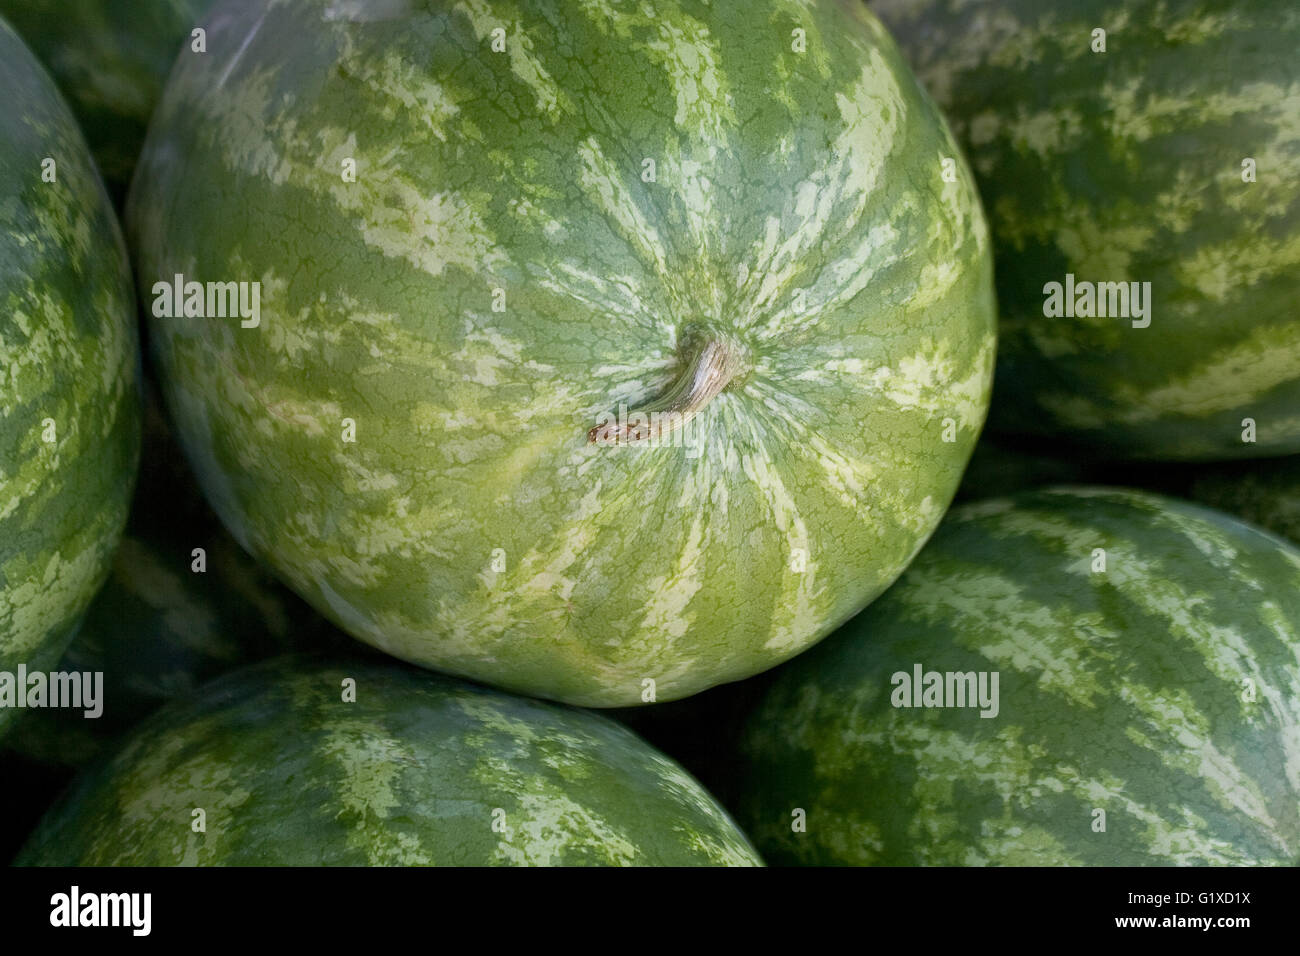 Les melons d'eau contexte Banque D'Images